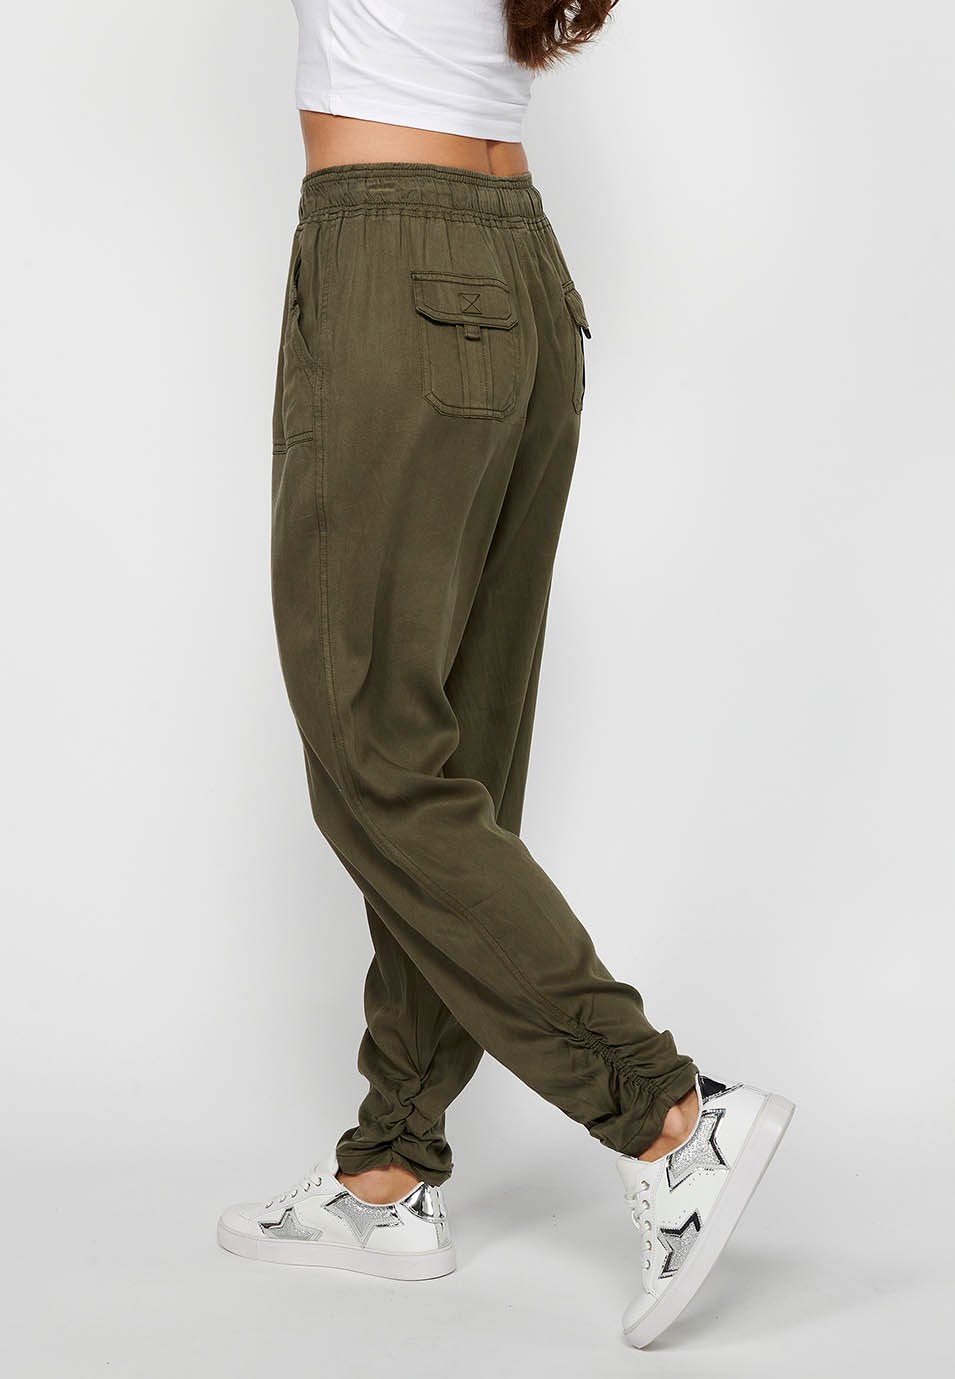 Pantalon de jogging long avec finition bouclée et taille caoutchoutée avec quatre poches, deux poches arrière à rabat de couleur Kaki pour femme 6